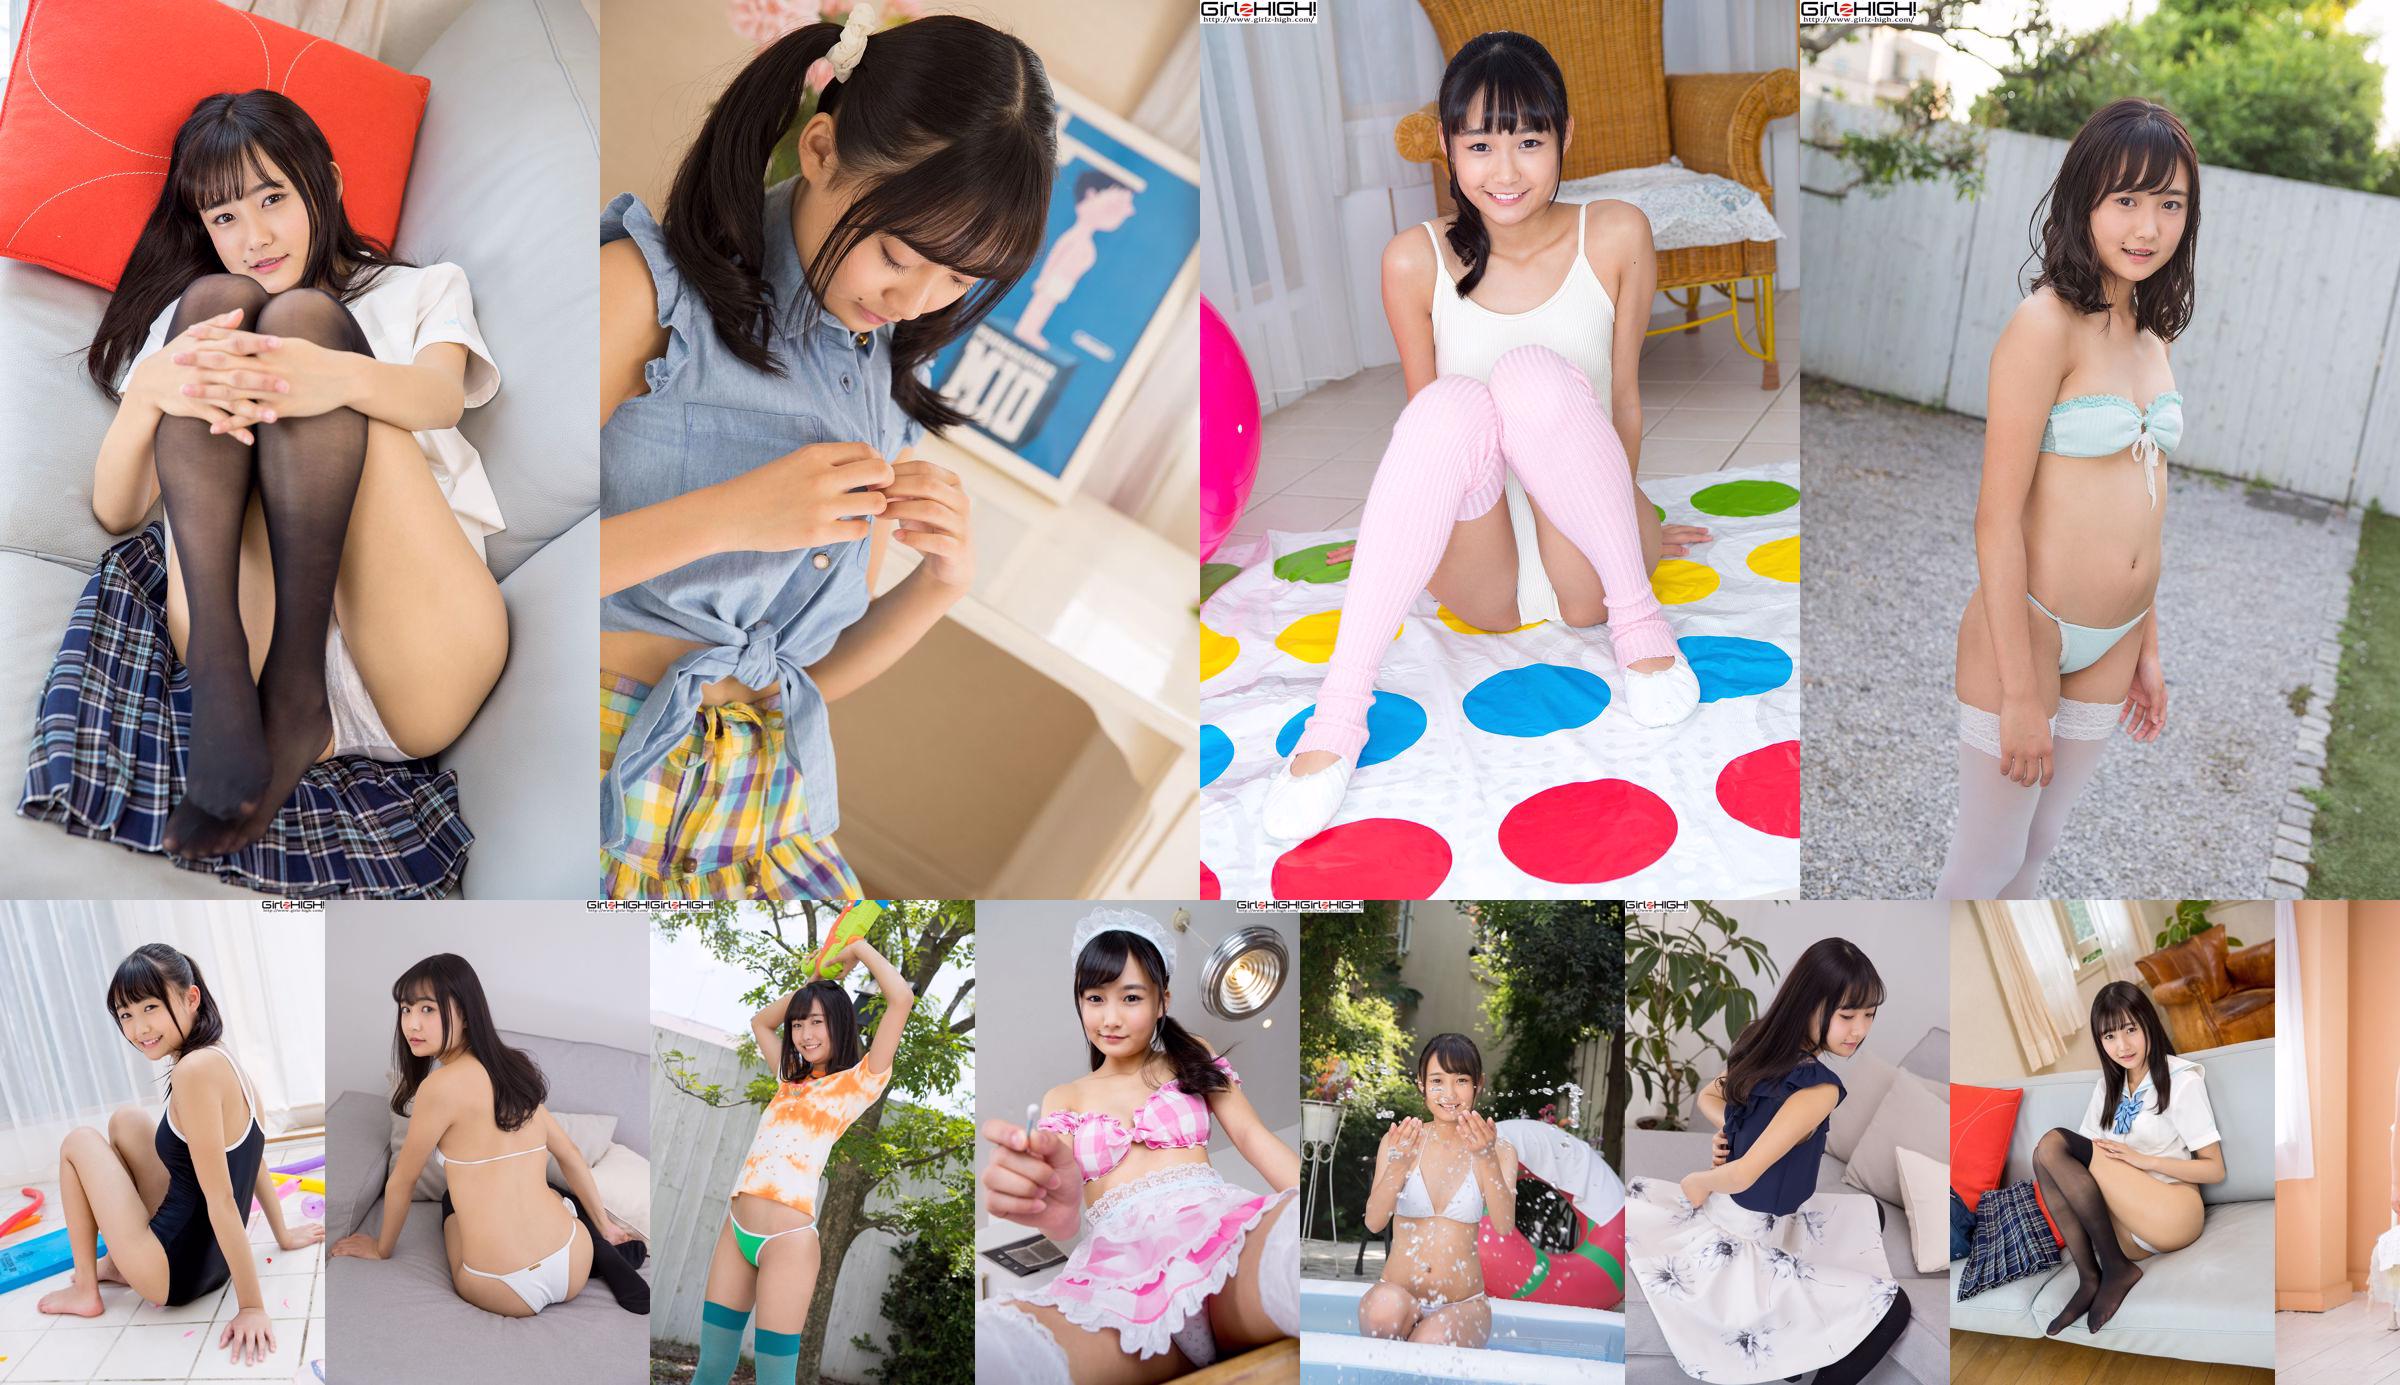 Nishino Hanakoi ra mắt đồng phục "Pretty Girl School" [Girlz-High] No.4234b3 Trang 1